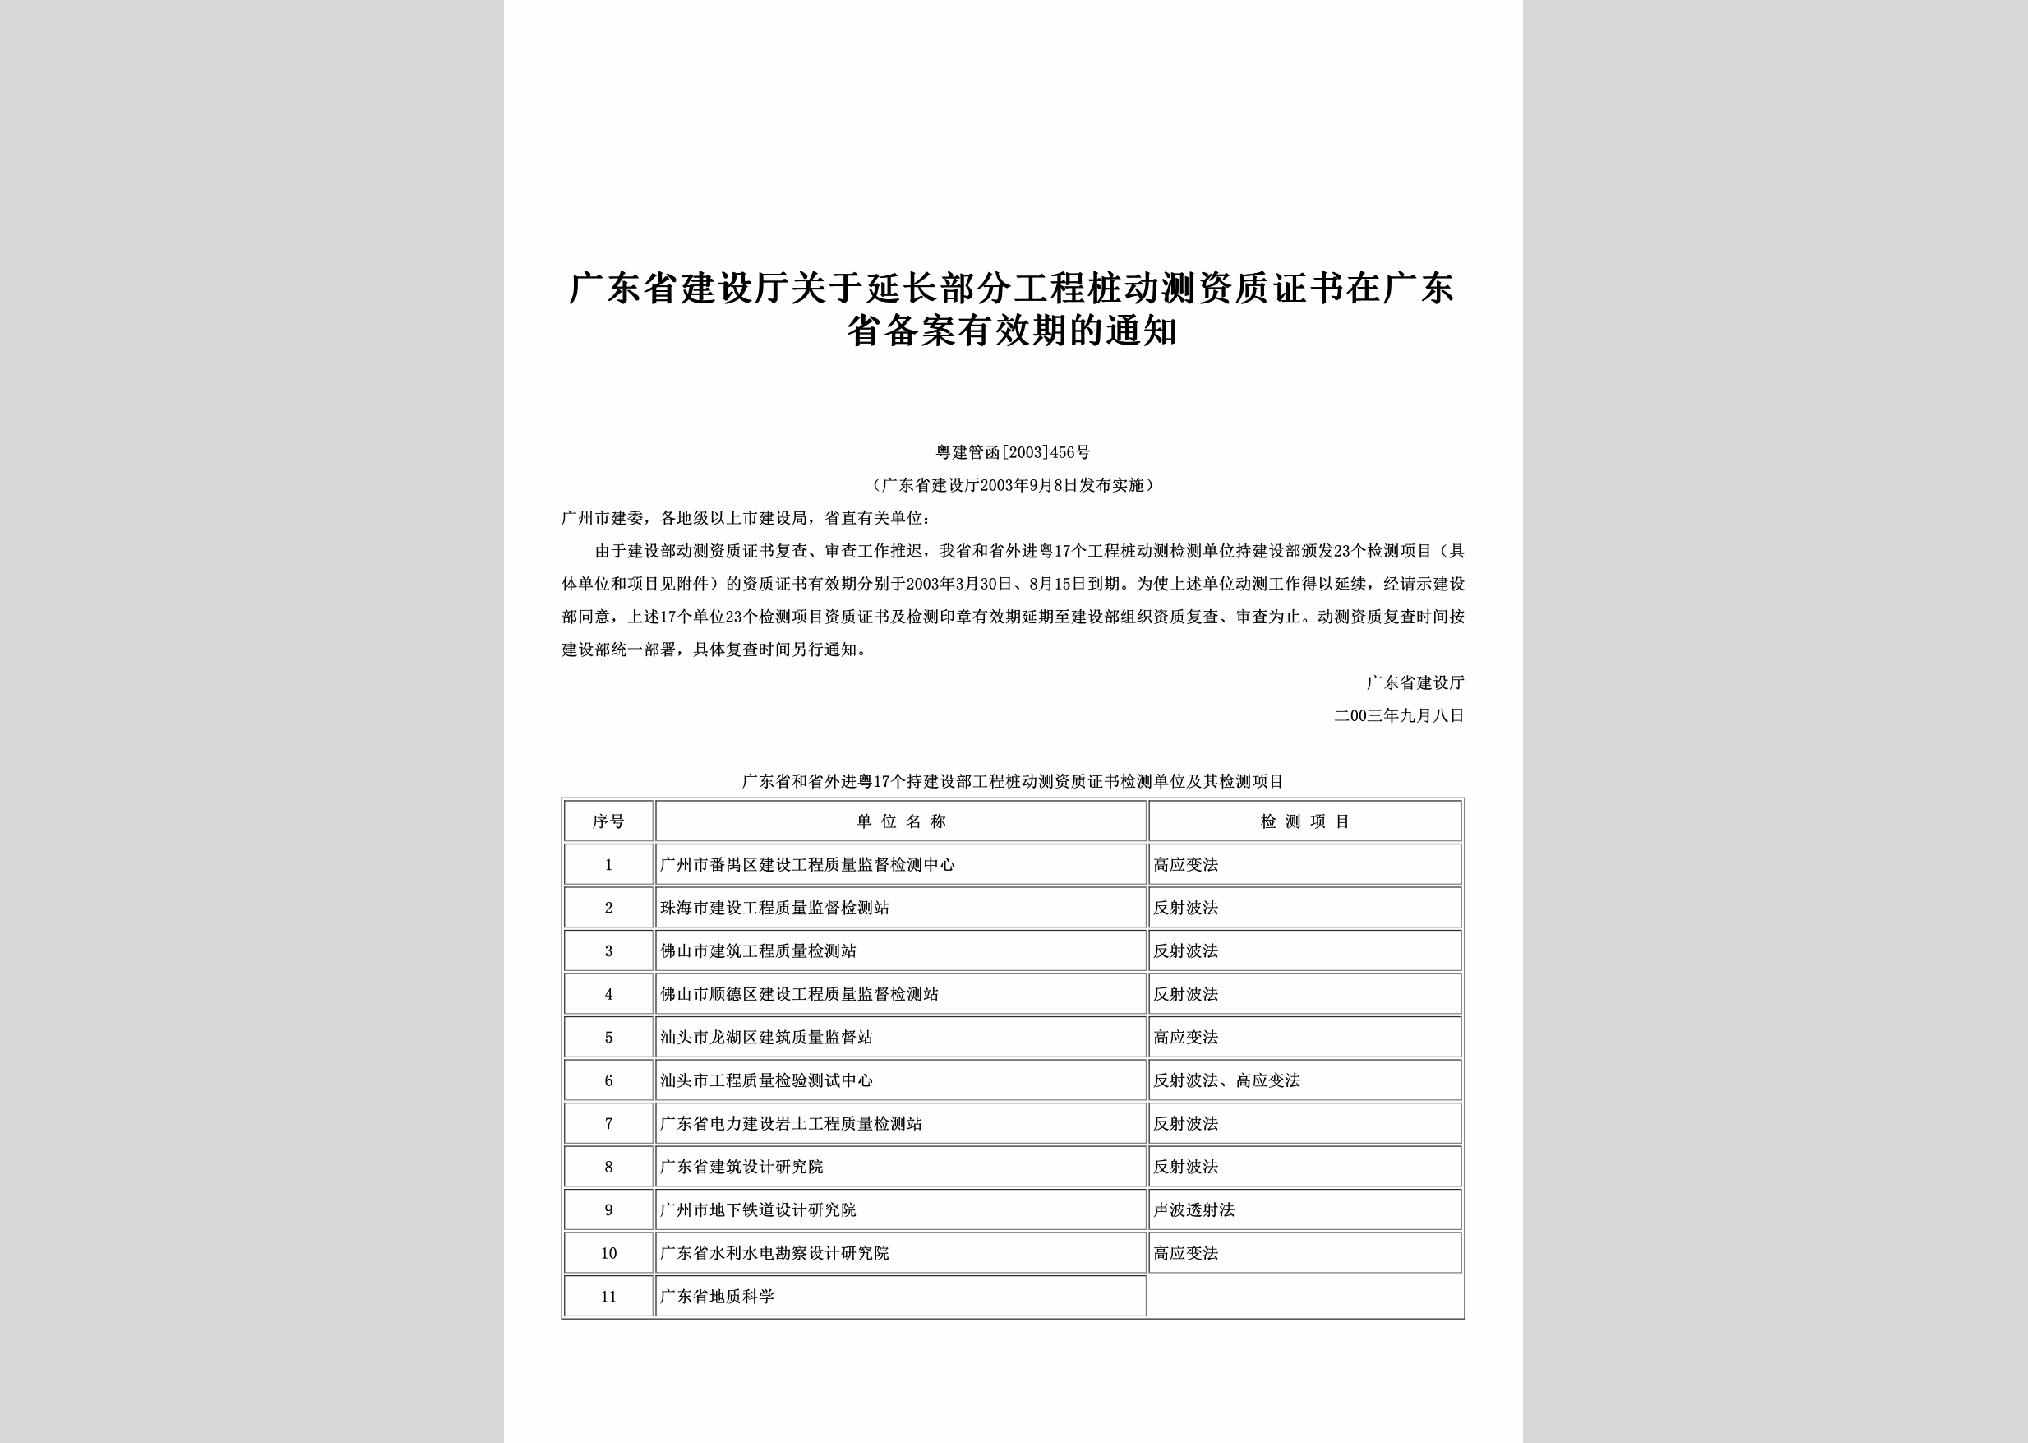 粤建管函[2003]456号：关于延长部分工程桩动测资质证书在广东省备案有效期的通知